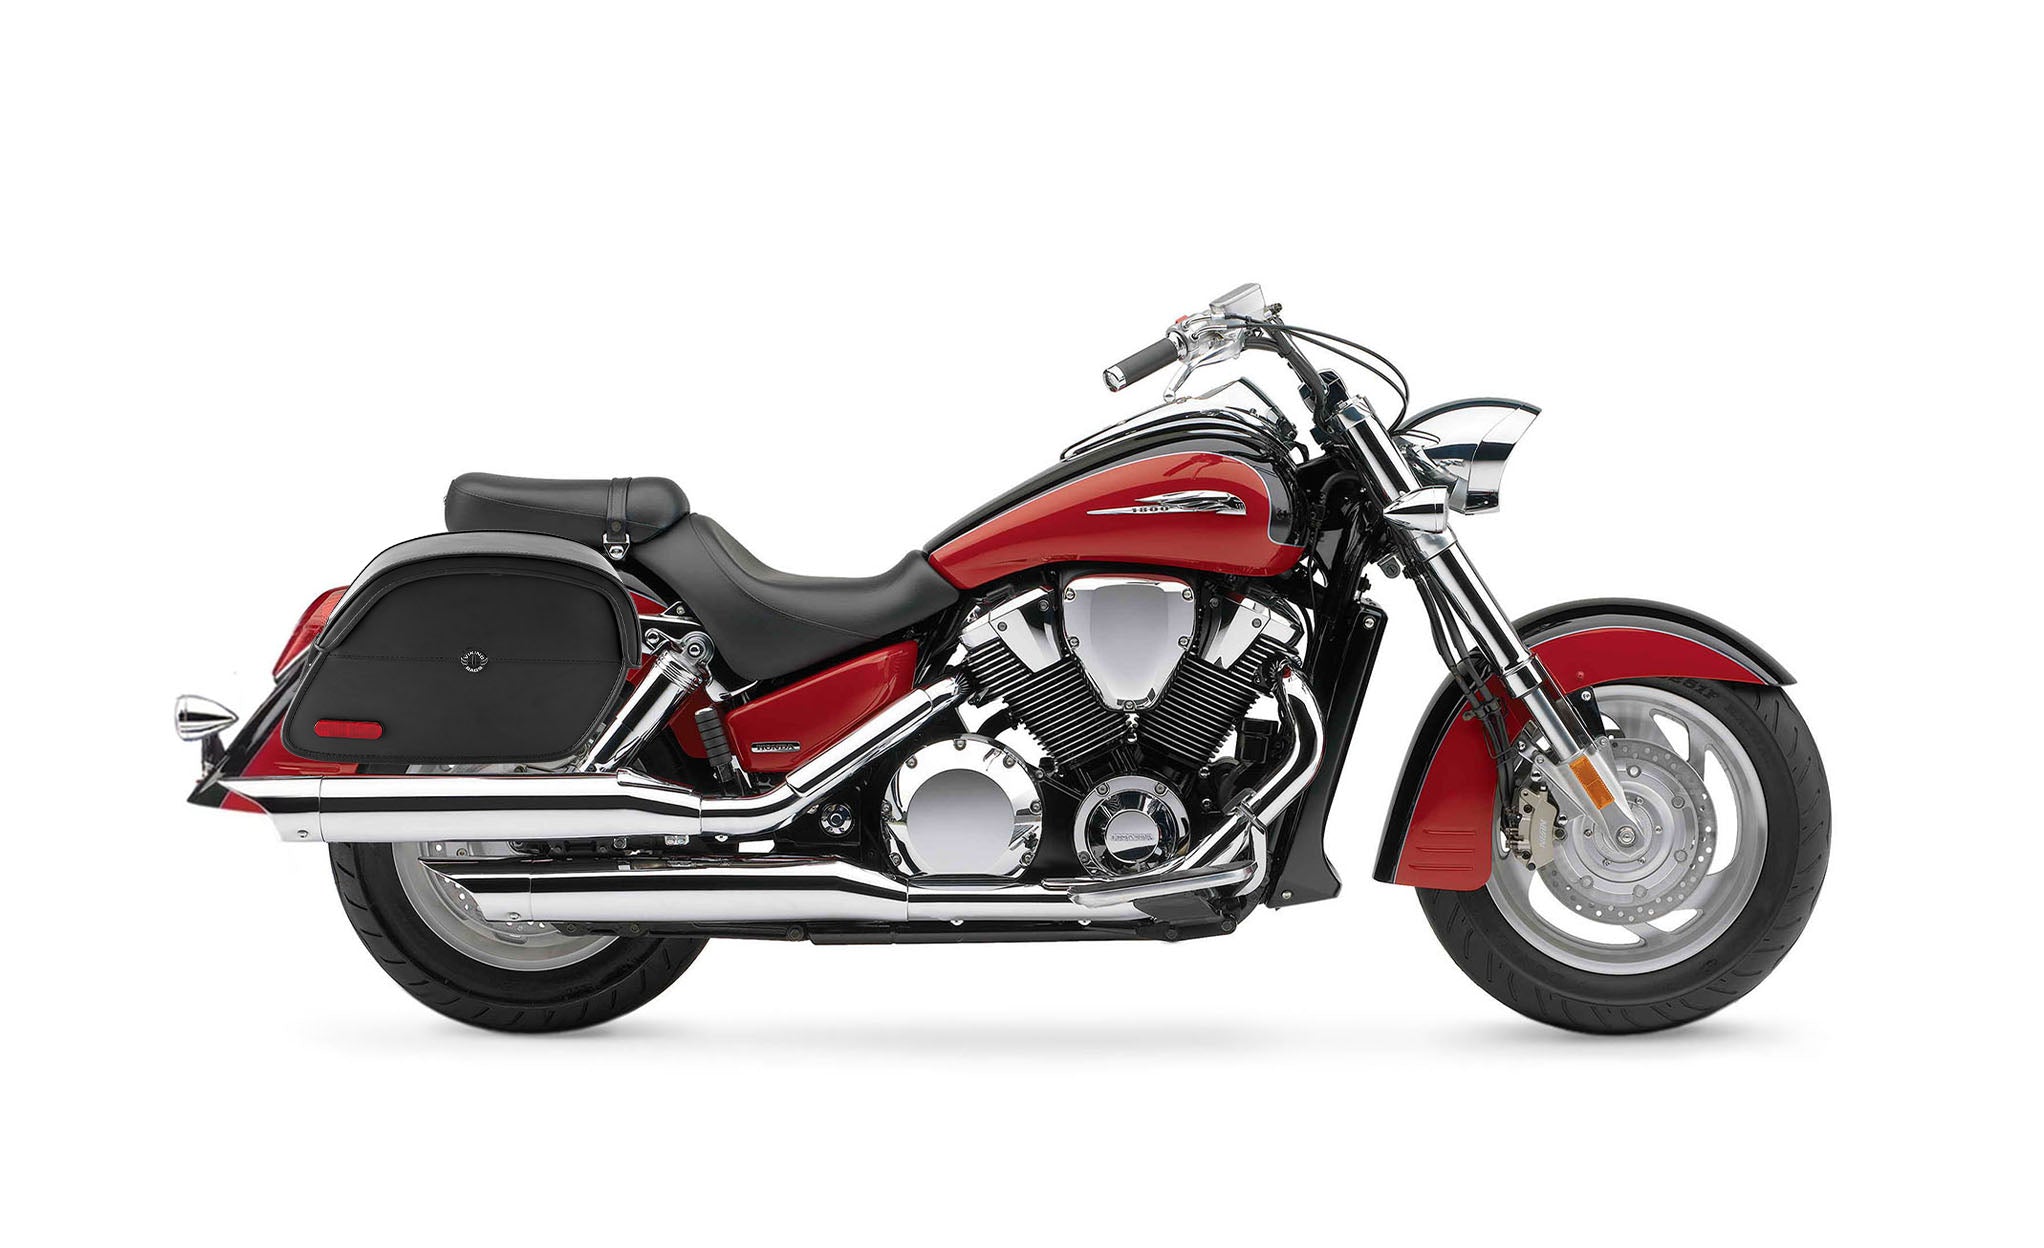 Viking California Large Honda Vtx 1800 R Retro Leather Motorcycle Saddlebags on Bike Photo @expand